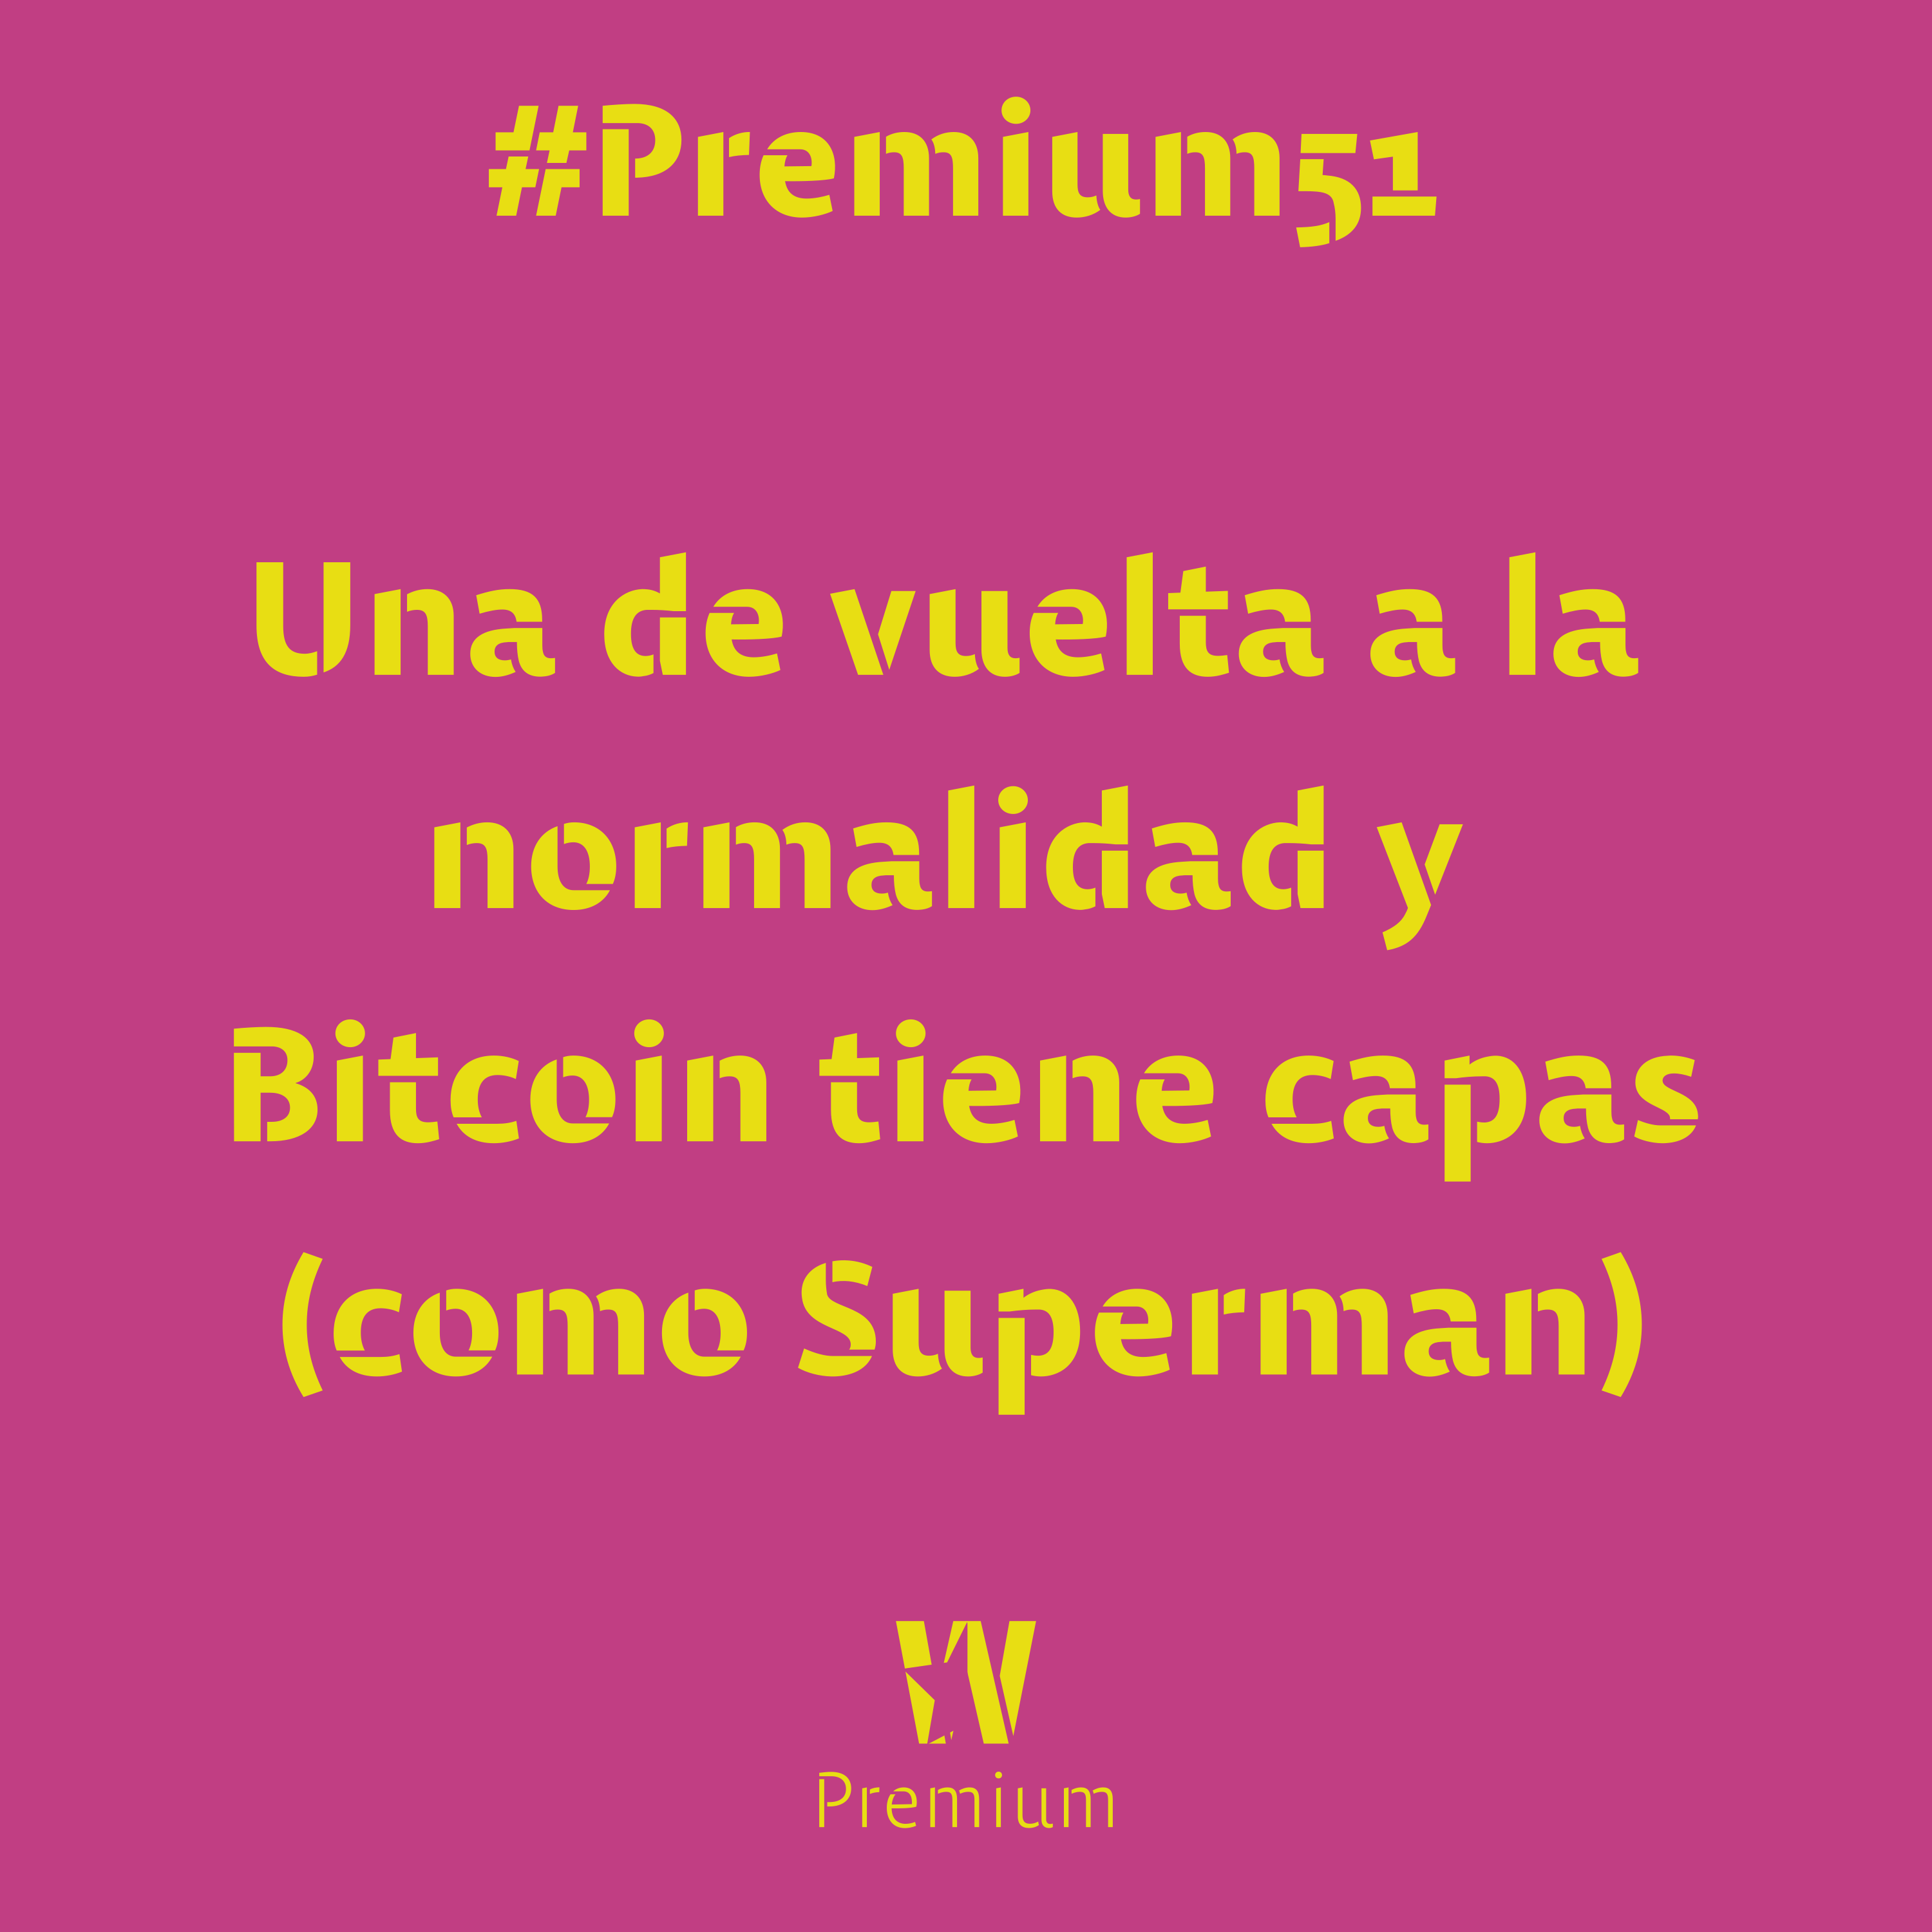 #Premium51 - Una de vuelta a la normalidad y Bitcoin tiene capas (como Superman)